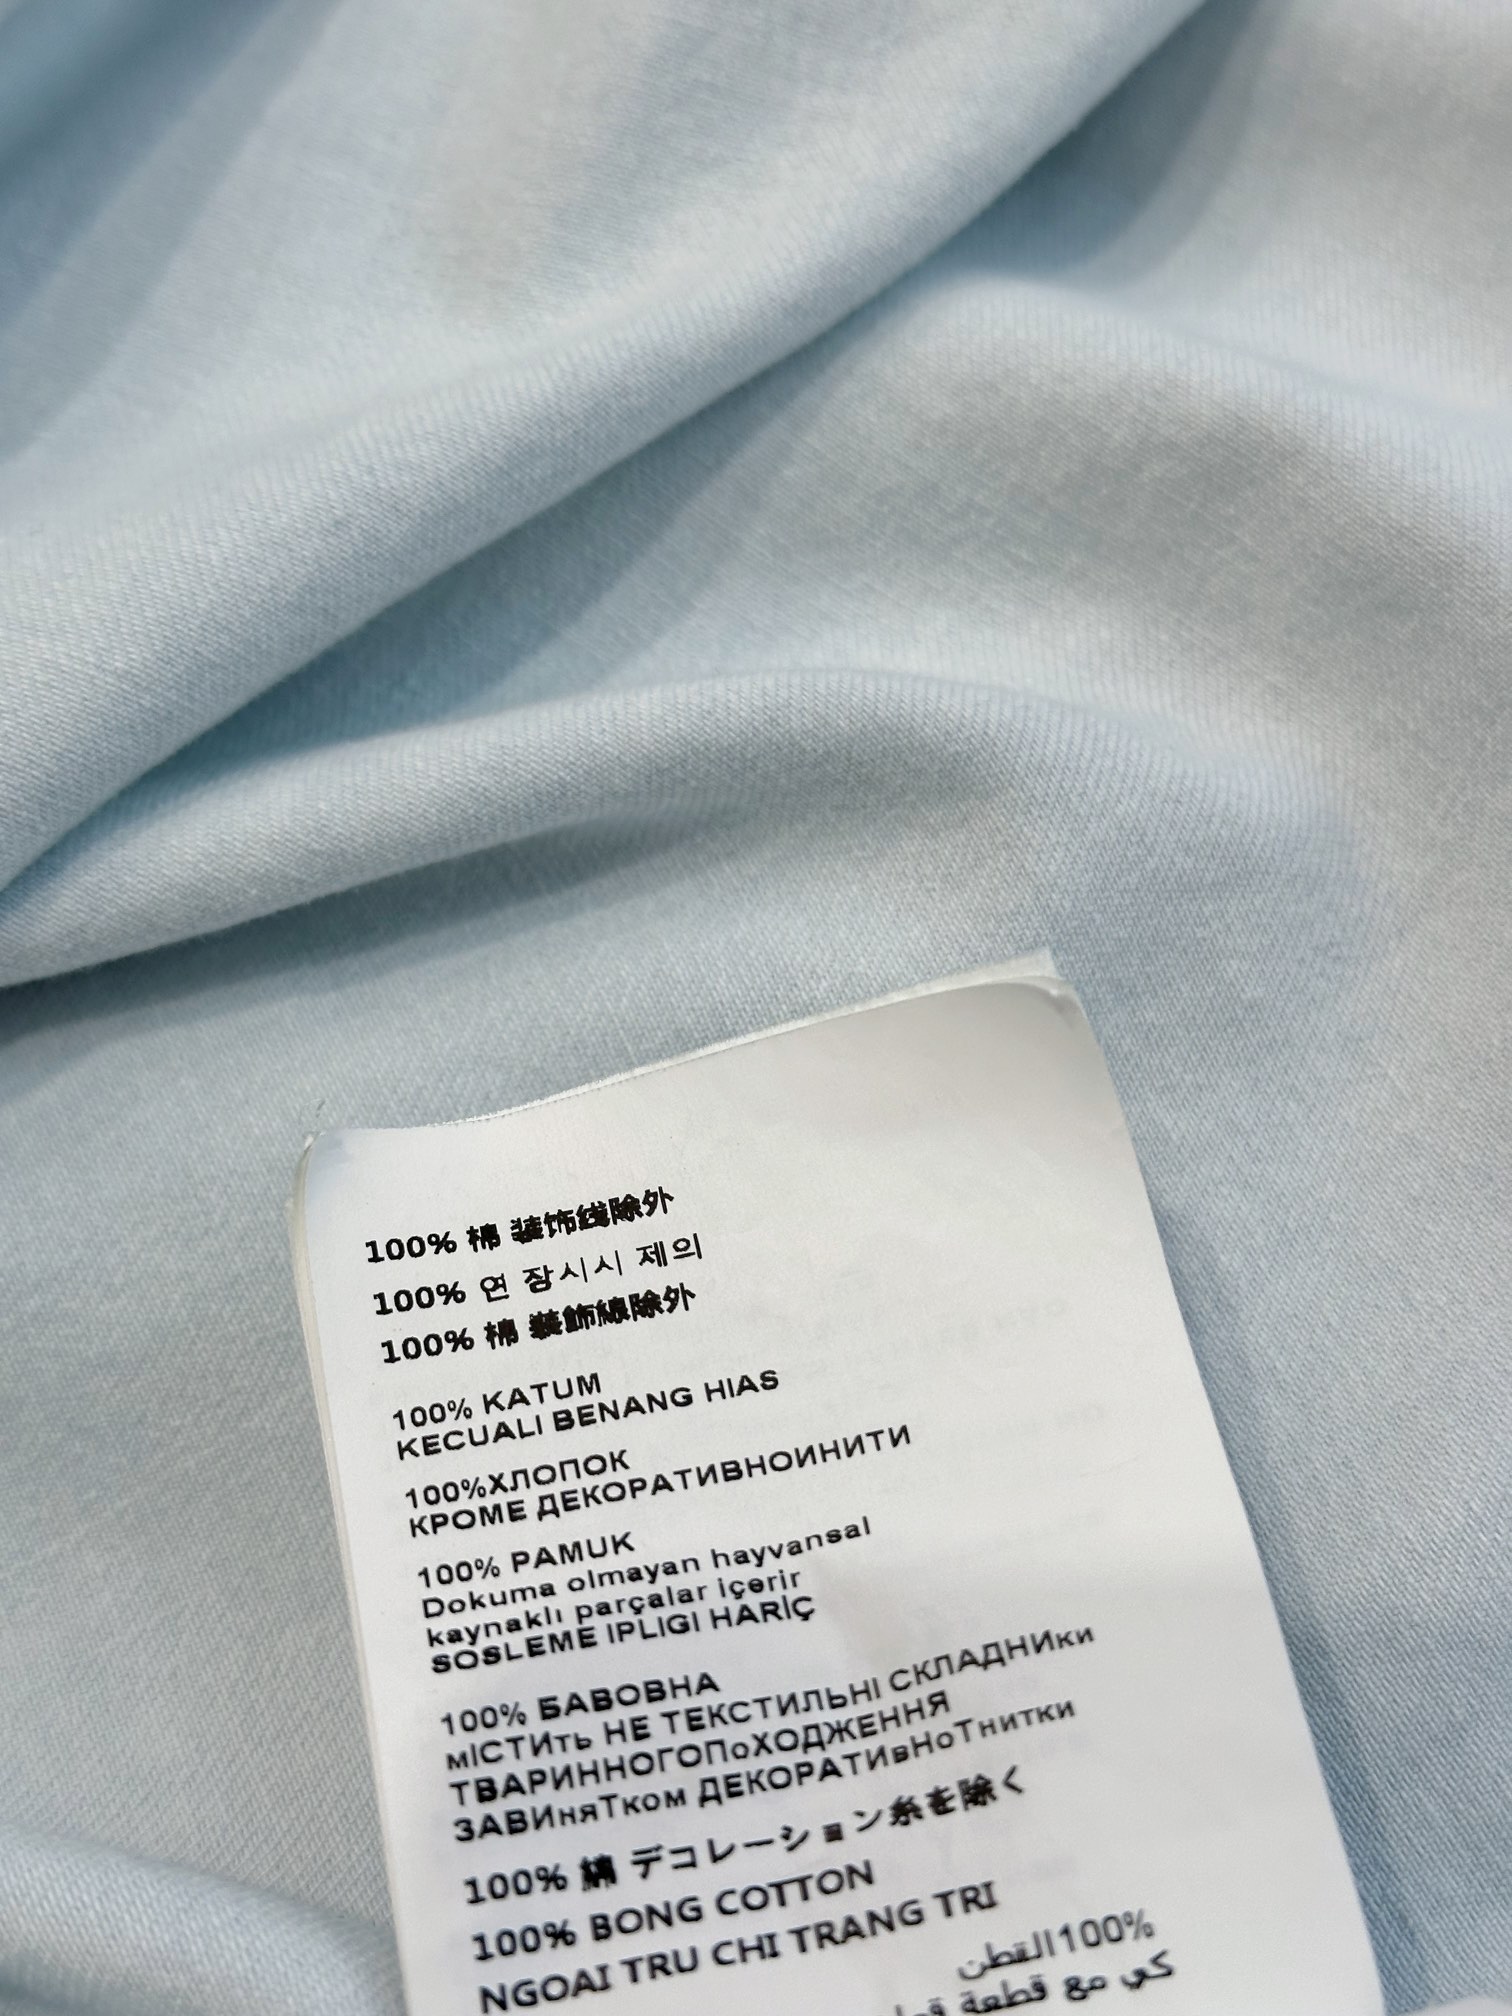 /新品发布浅蓝色牛仔马甲定制牛仔棉面料面料在制作流程和耗时上花费了大量的时间多重洗水工艺洗软令面料手感颜